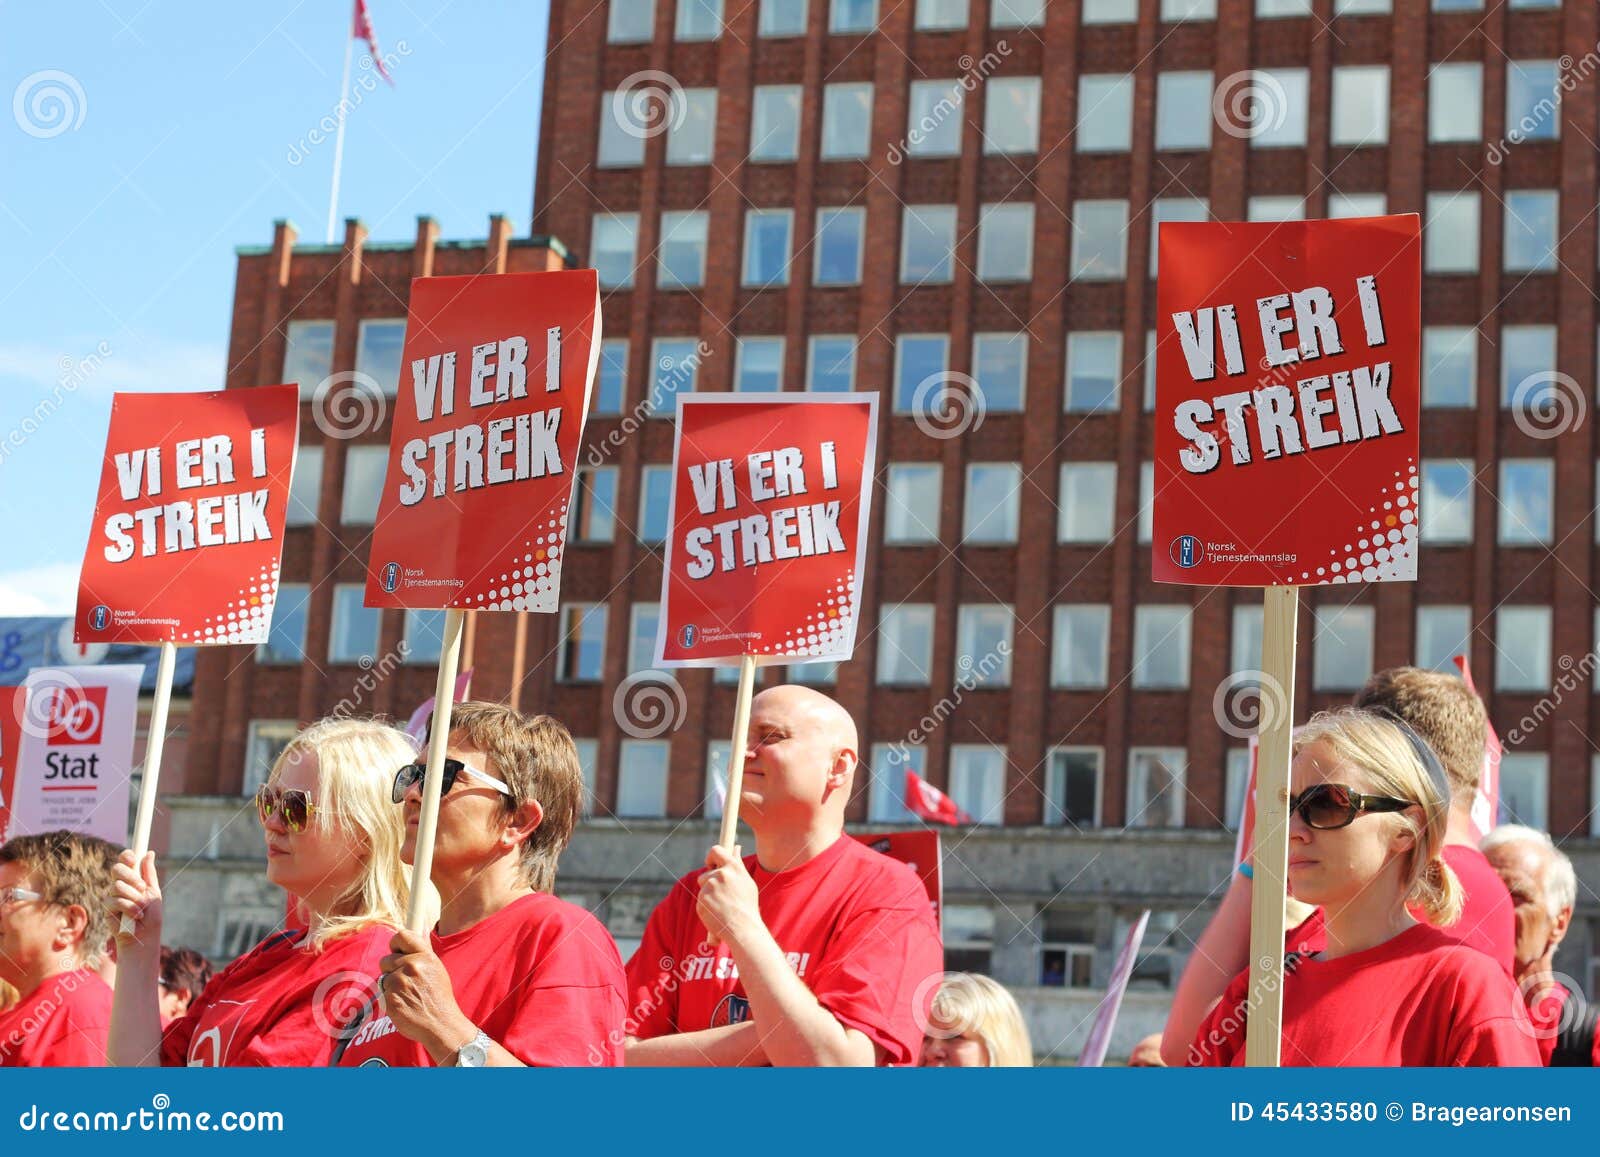 streik norwegian